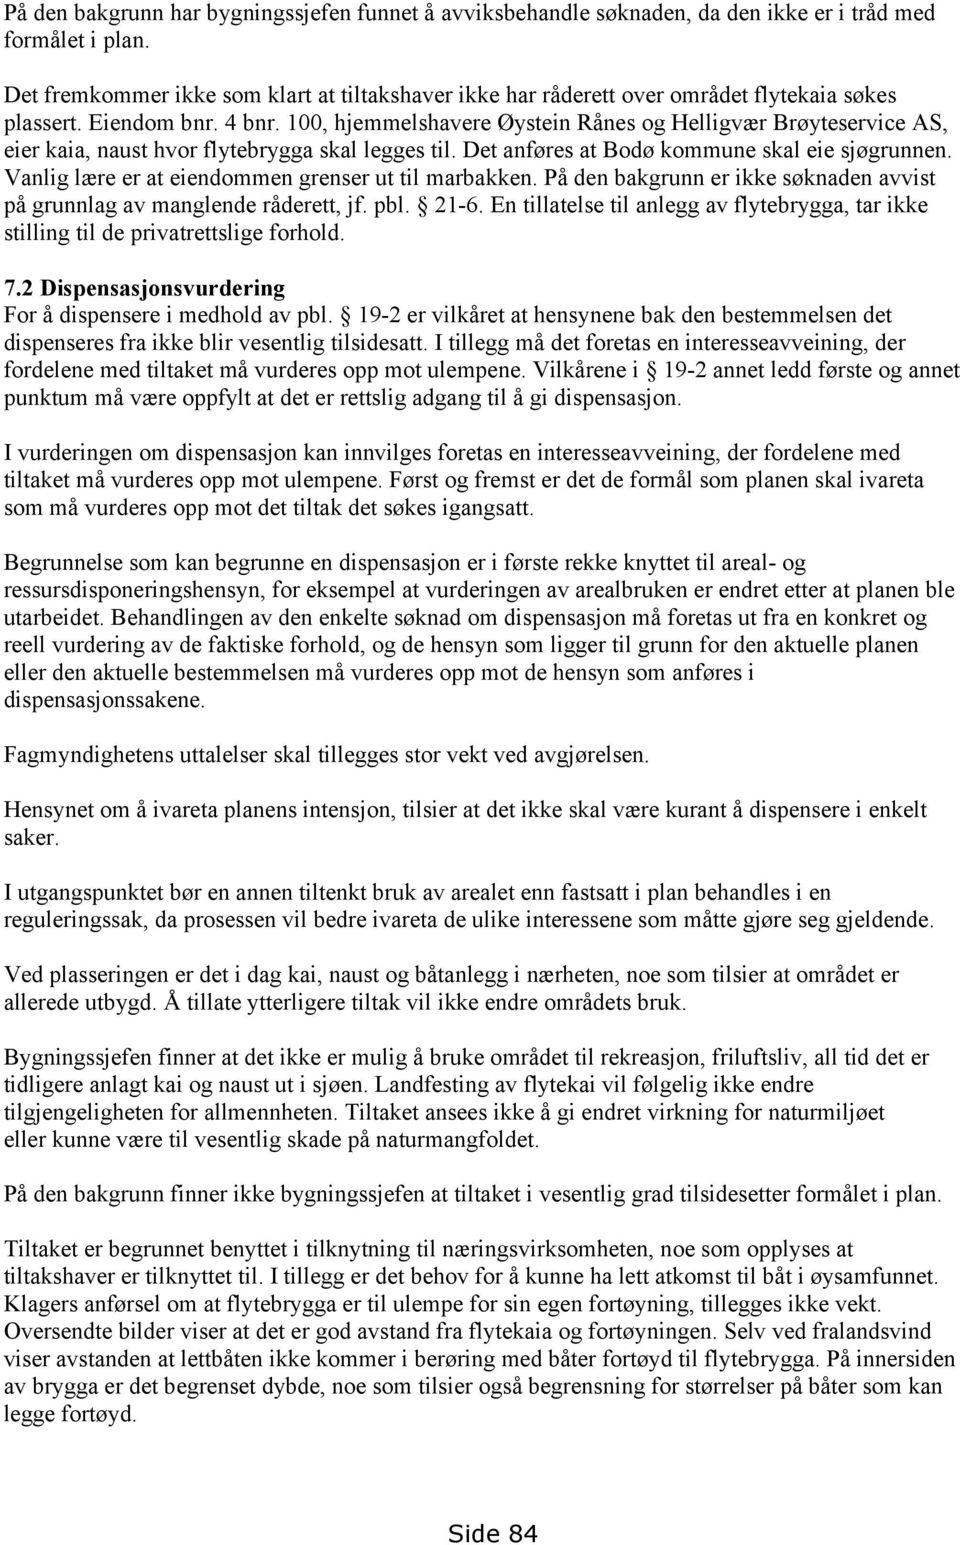 100, hjemmelshavere Øystein Rånes og Helligvær Brøyteservice AS, eier kaia, naust hvor flytebrygga skal legges til. Det anføres at Bodø kommune skal eie sjøgrunnen.